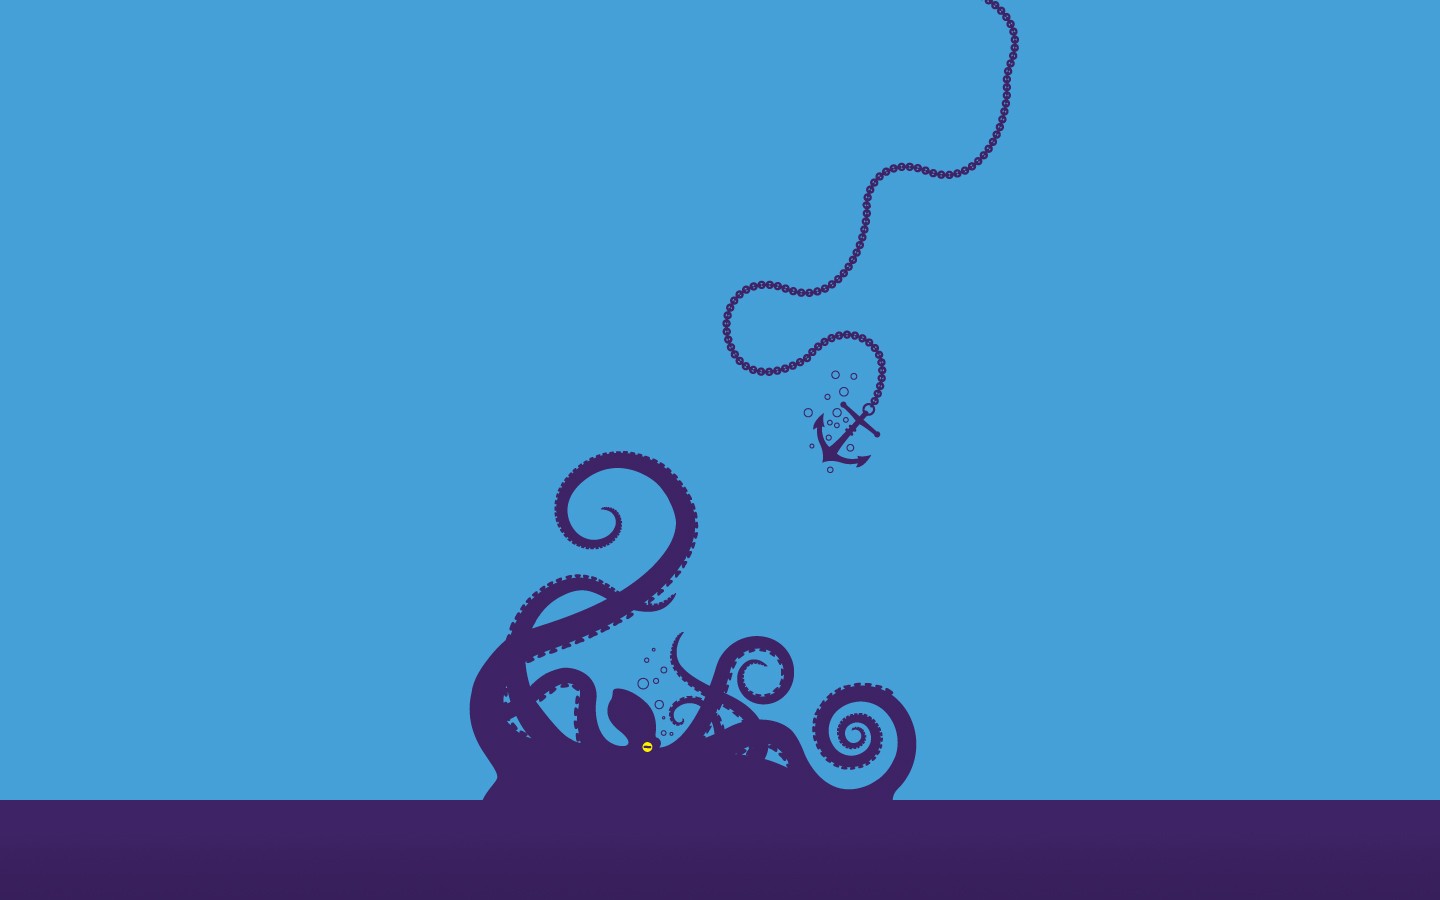 General 1440x900 minimalism octopus anchors animals underwater artwork cyan background